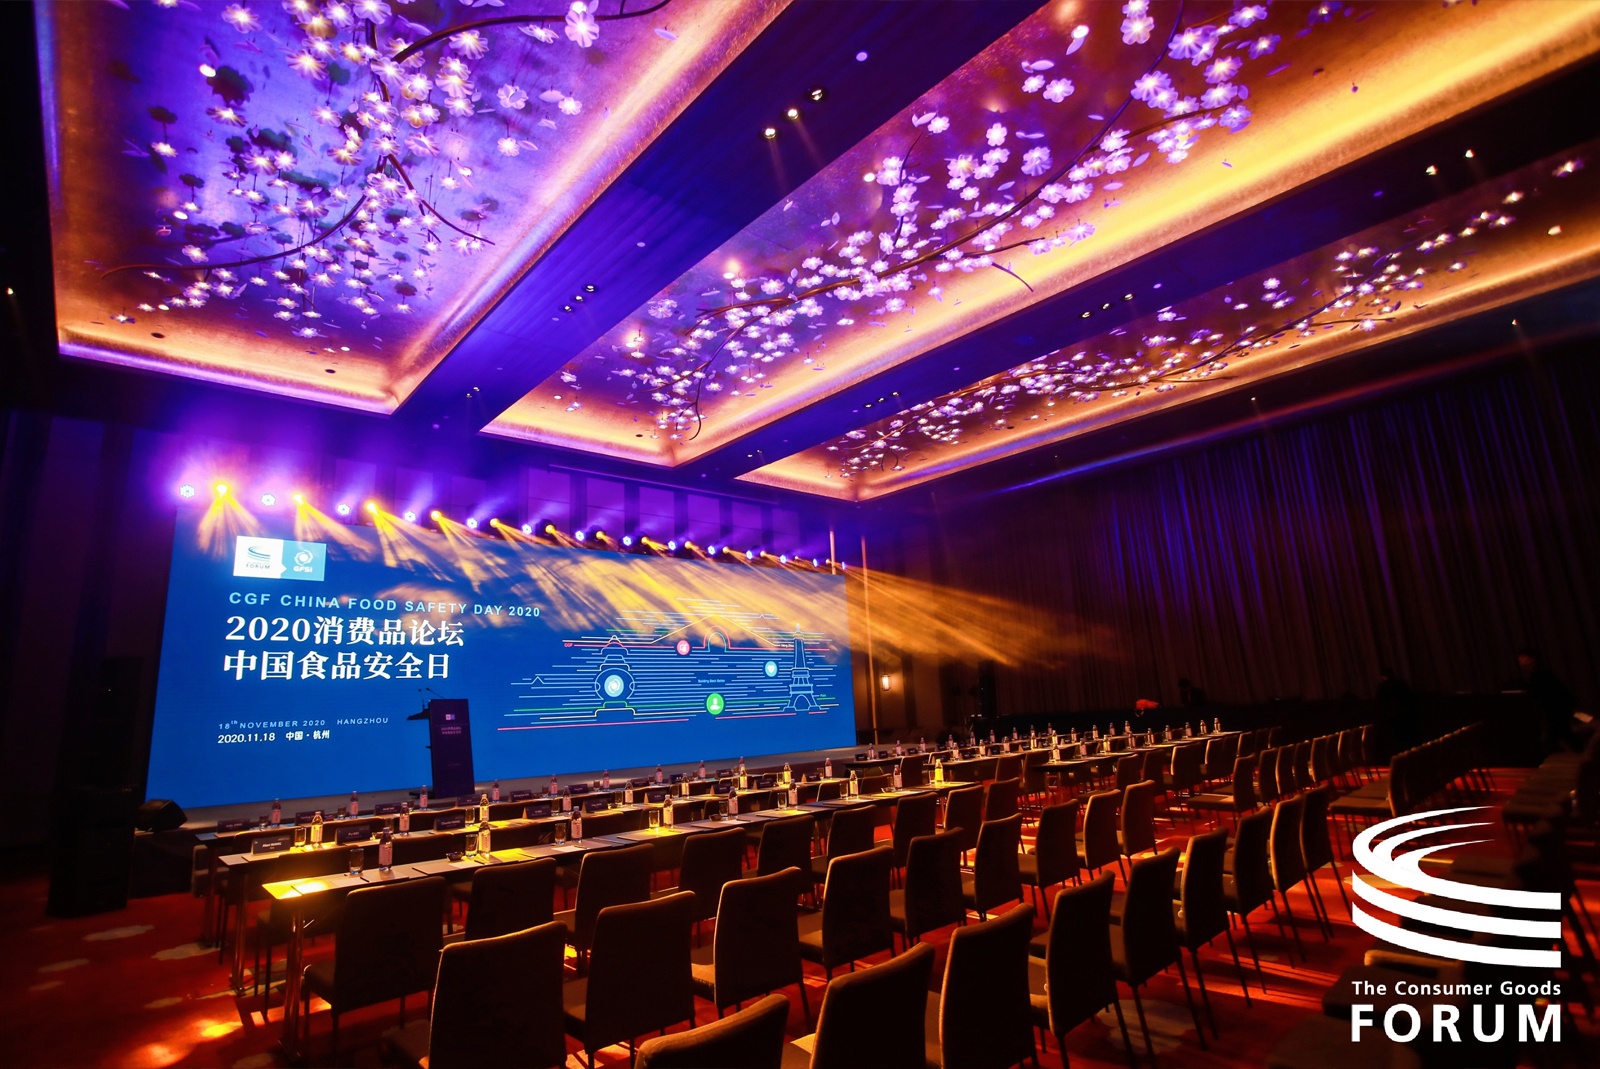 2020第三届消费品论坛 CGF中国日-3